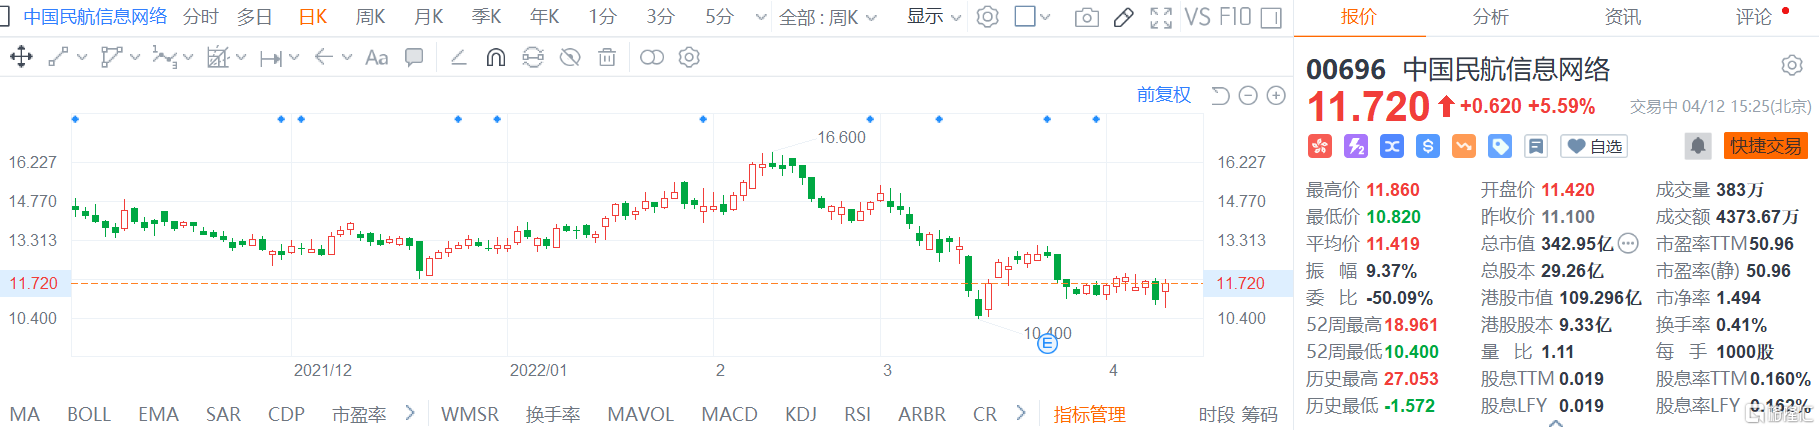 中国民航信息网络(0696.HK)股价震荡拉升 现报11.72港元涨幅5.6%